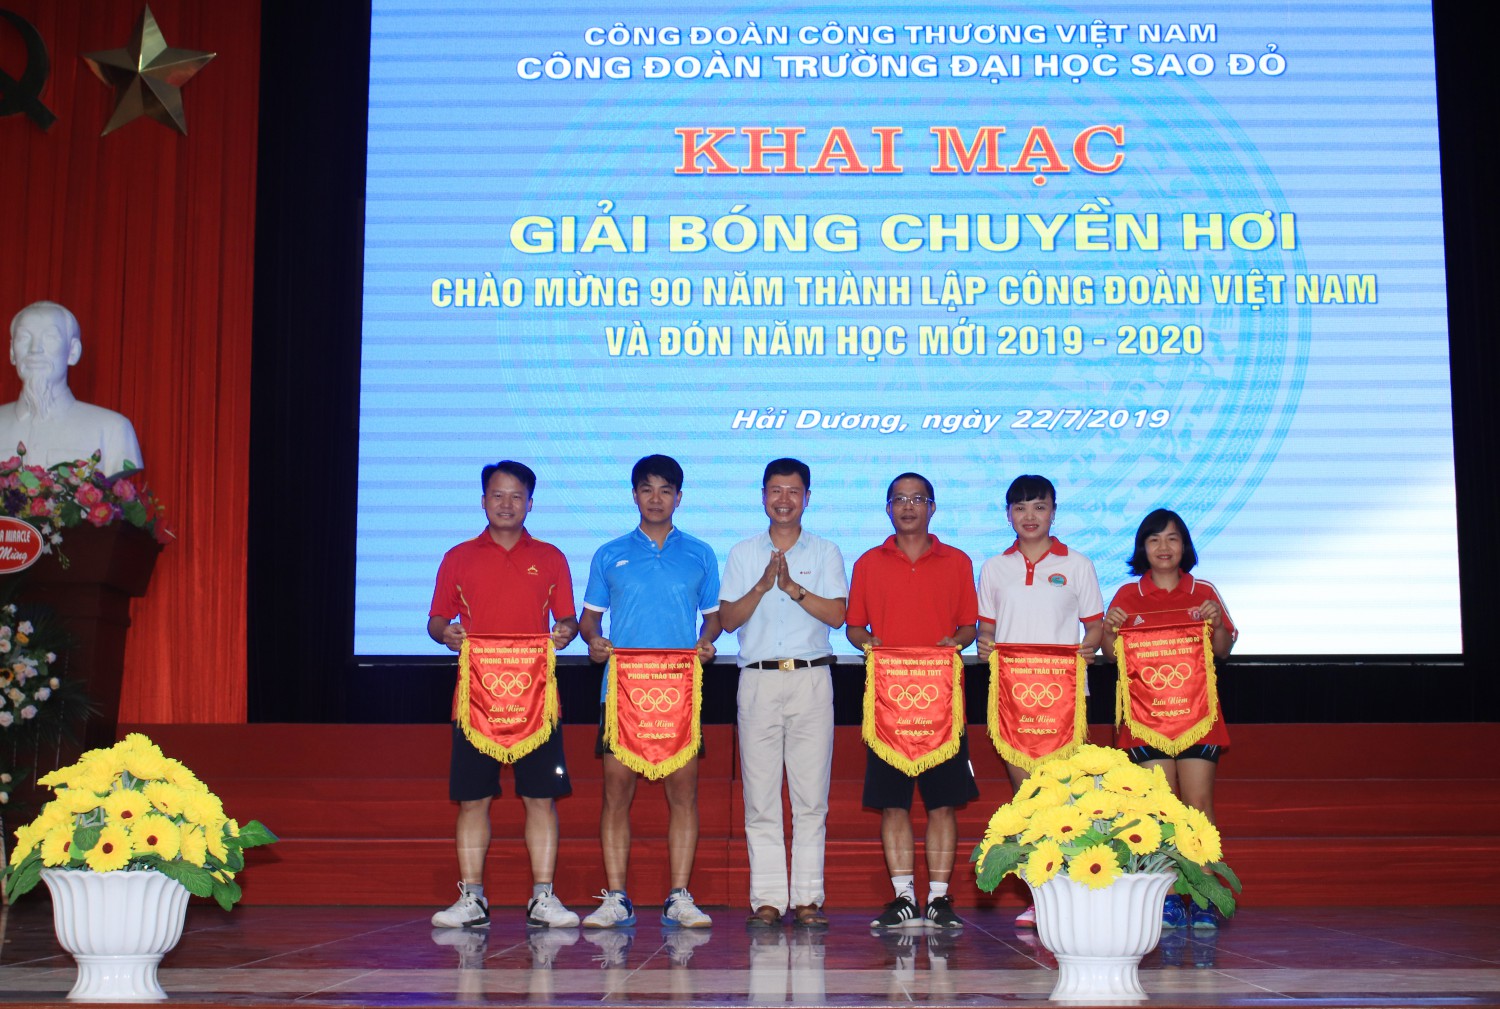 Khai mạc giải bóng chuyền hơi chào mừng 90 năm thành lập  Công đoàn Việt Nam và đón năm học mới 2019-2020